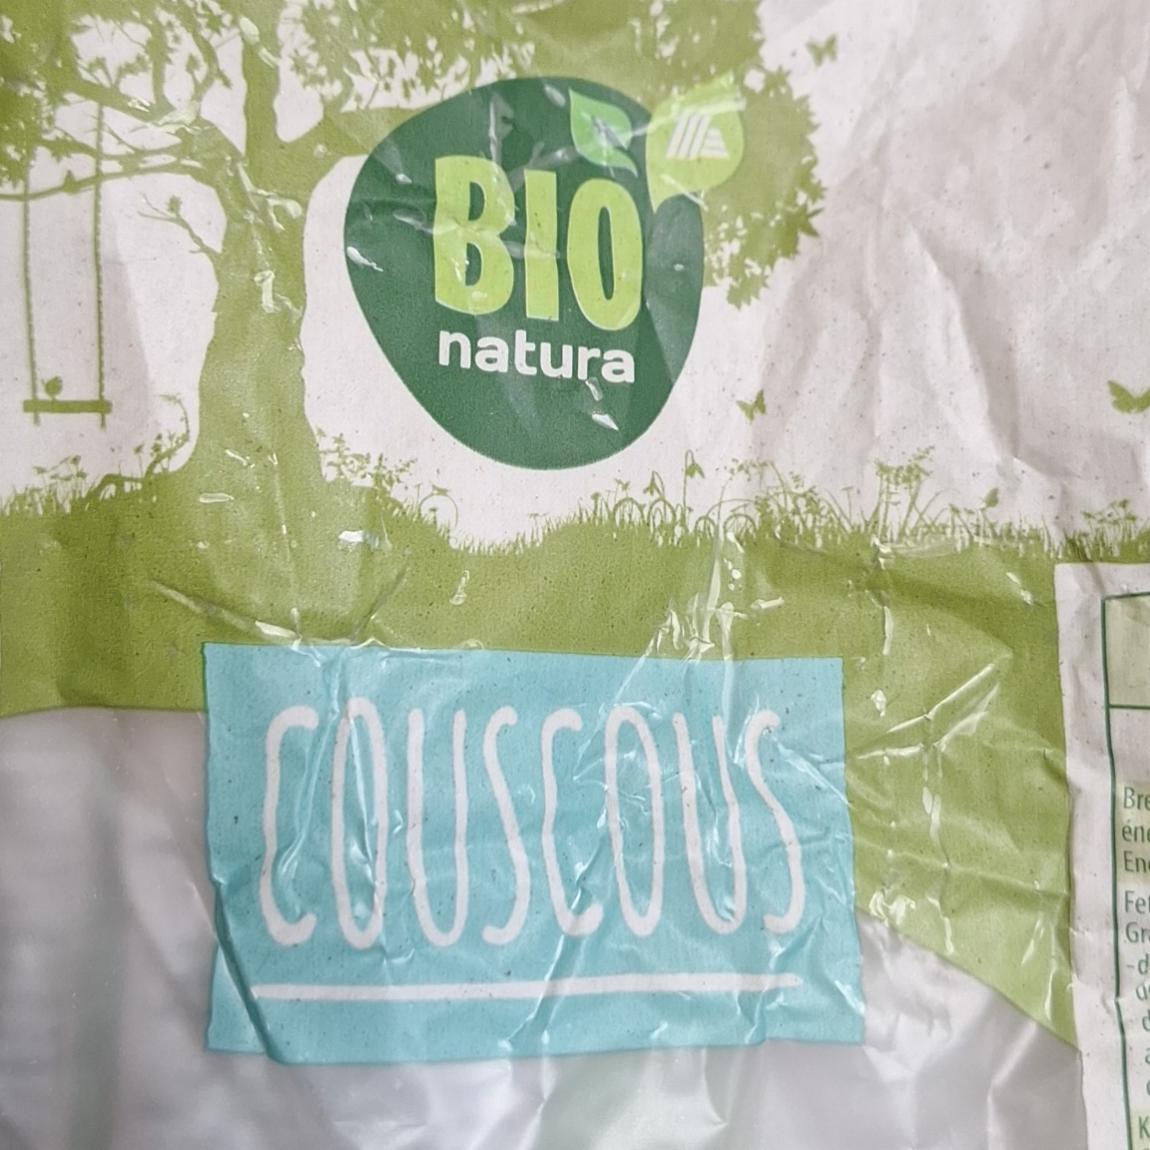 Képek - Couscous Bio natura